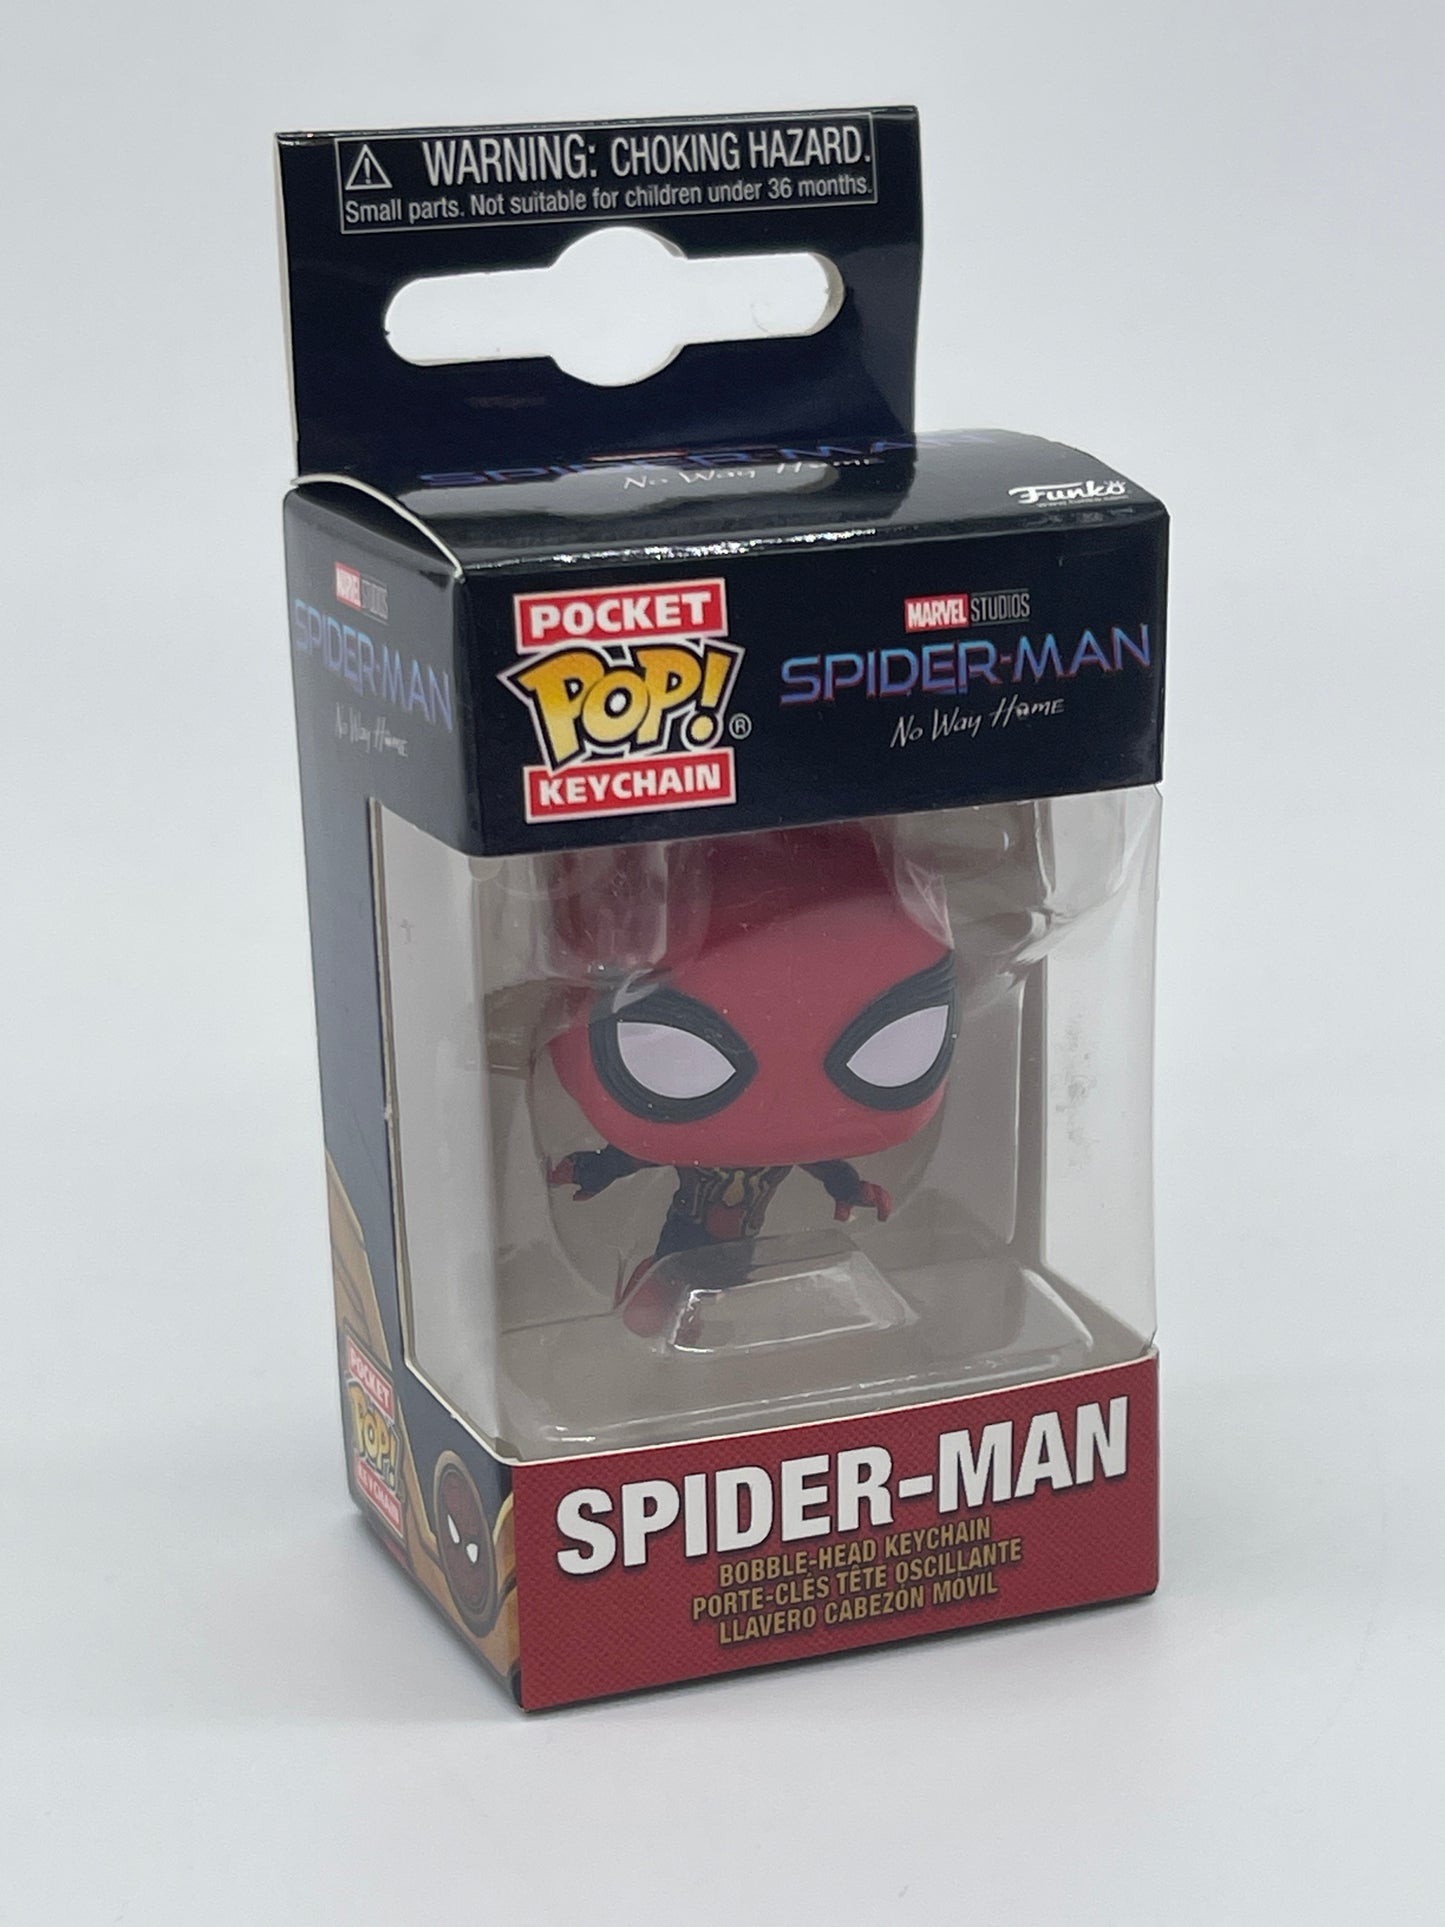 Funko Pocket POP Keychain "Spider-Man" No Way Home Marvel (2022)